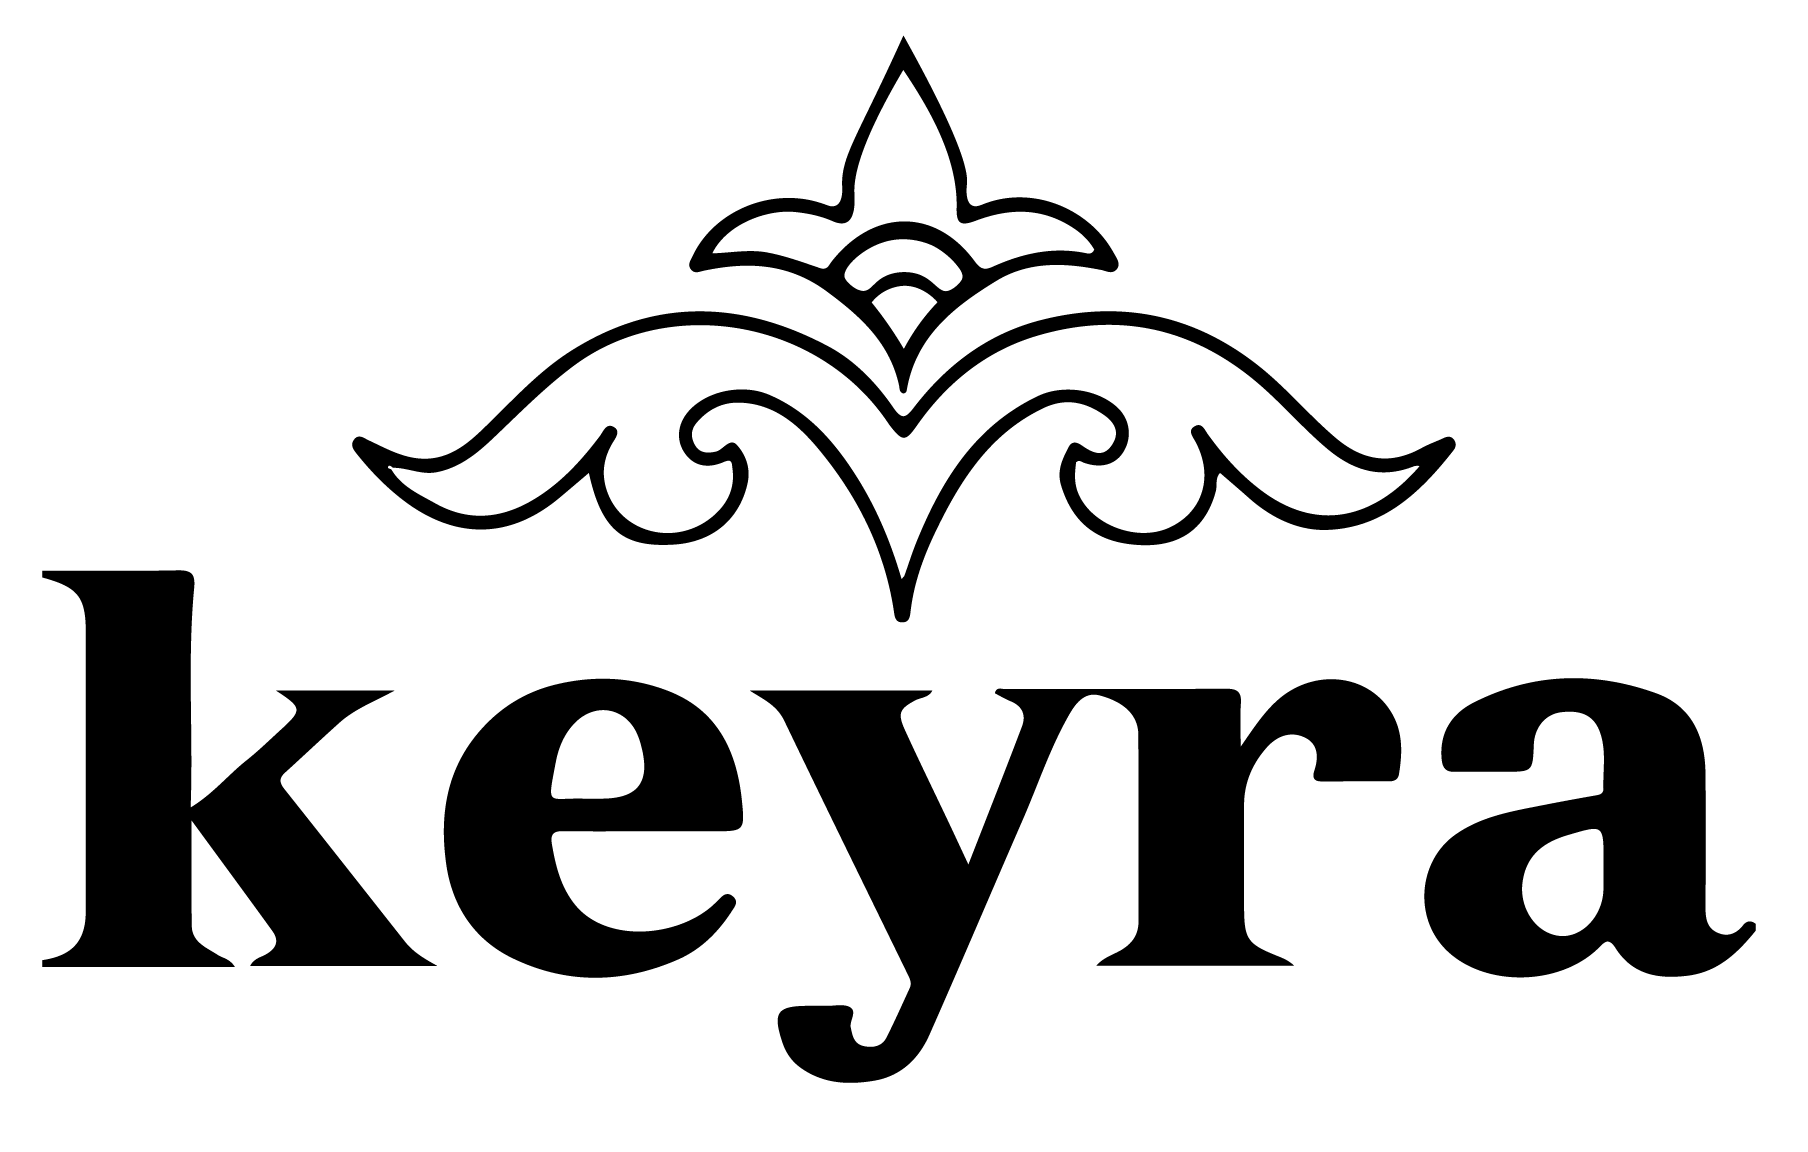 KEYRA